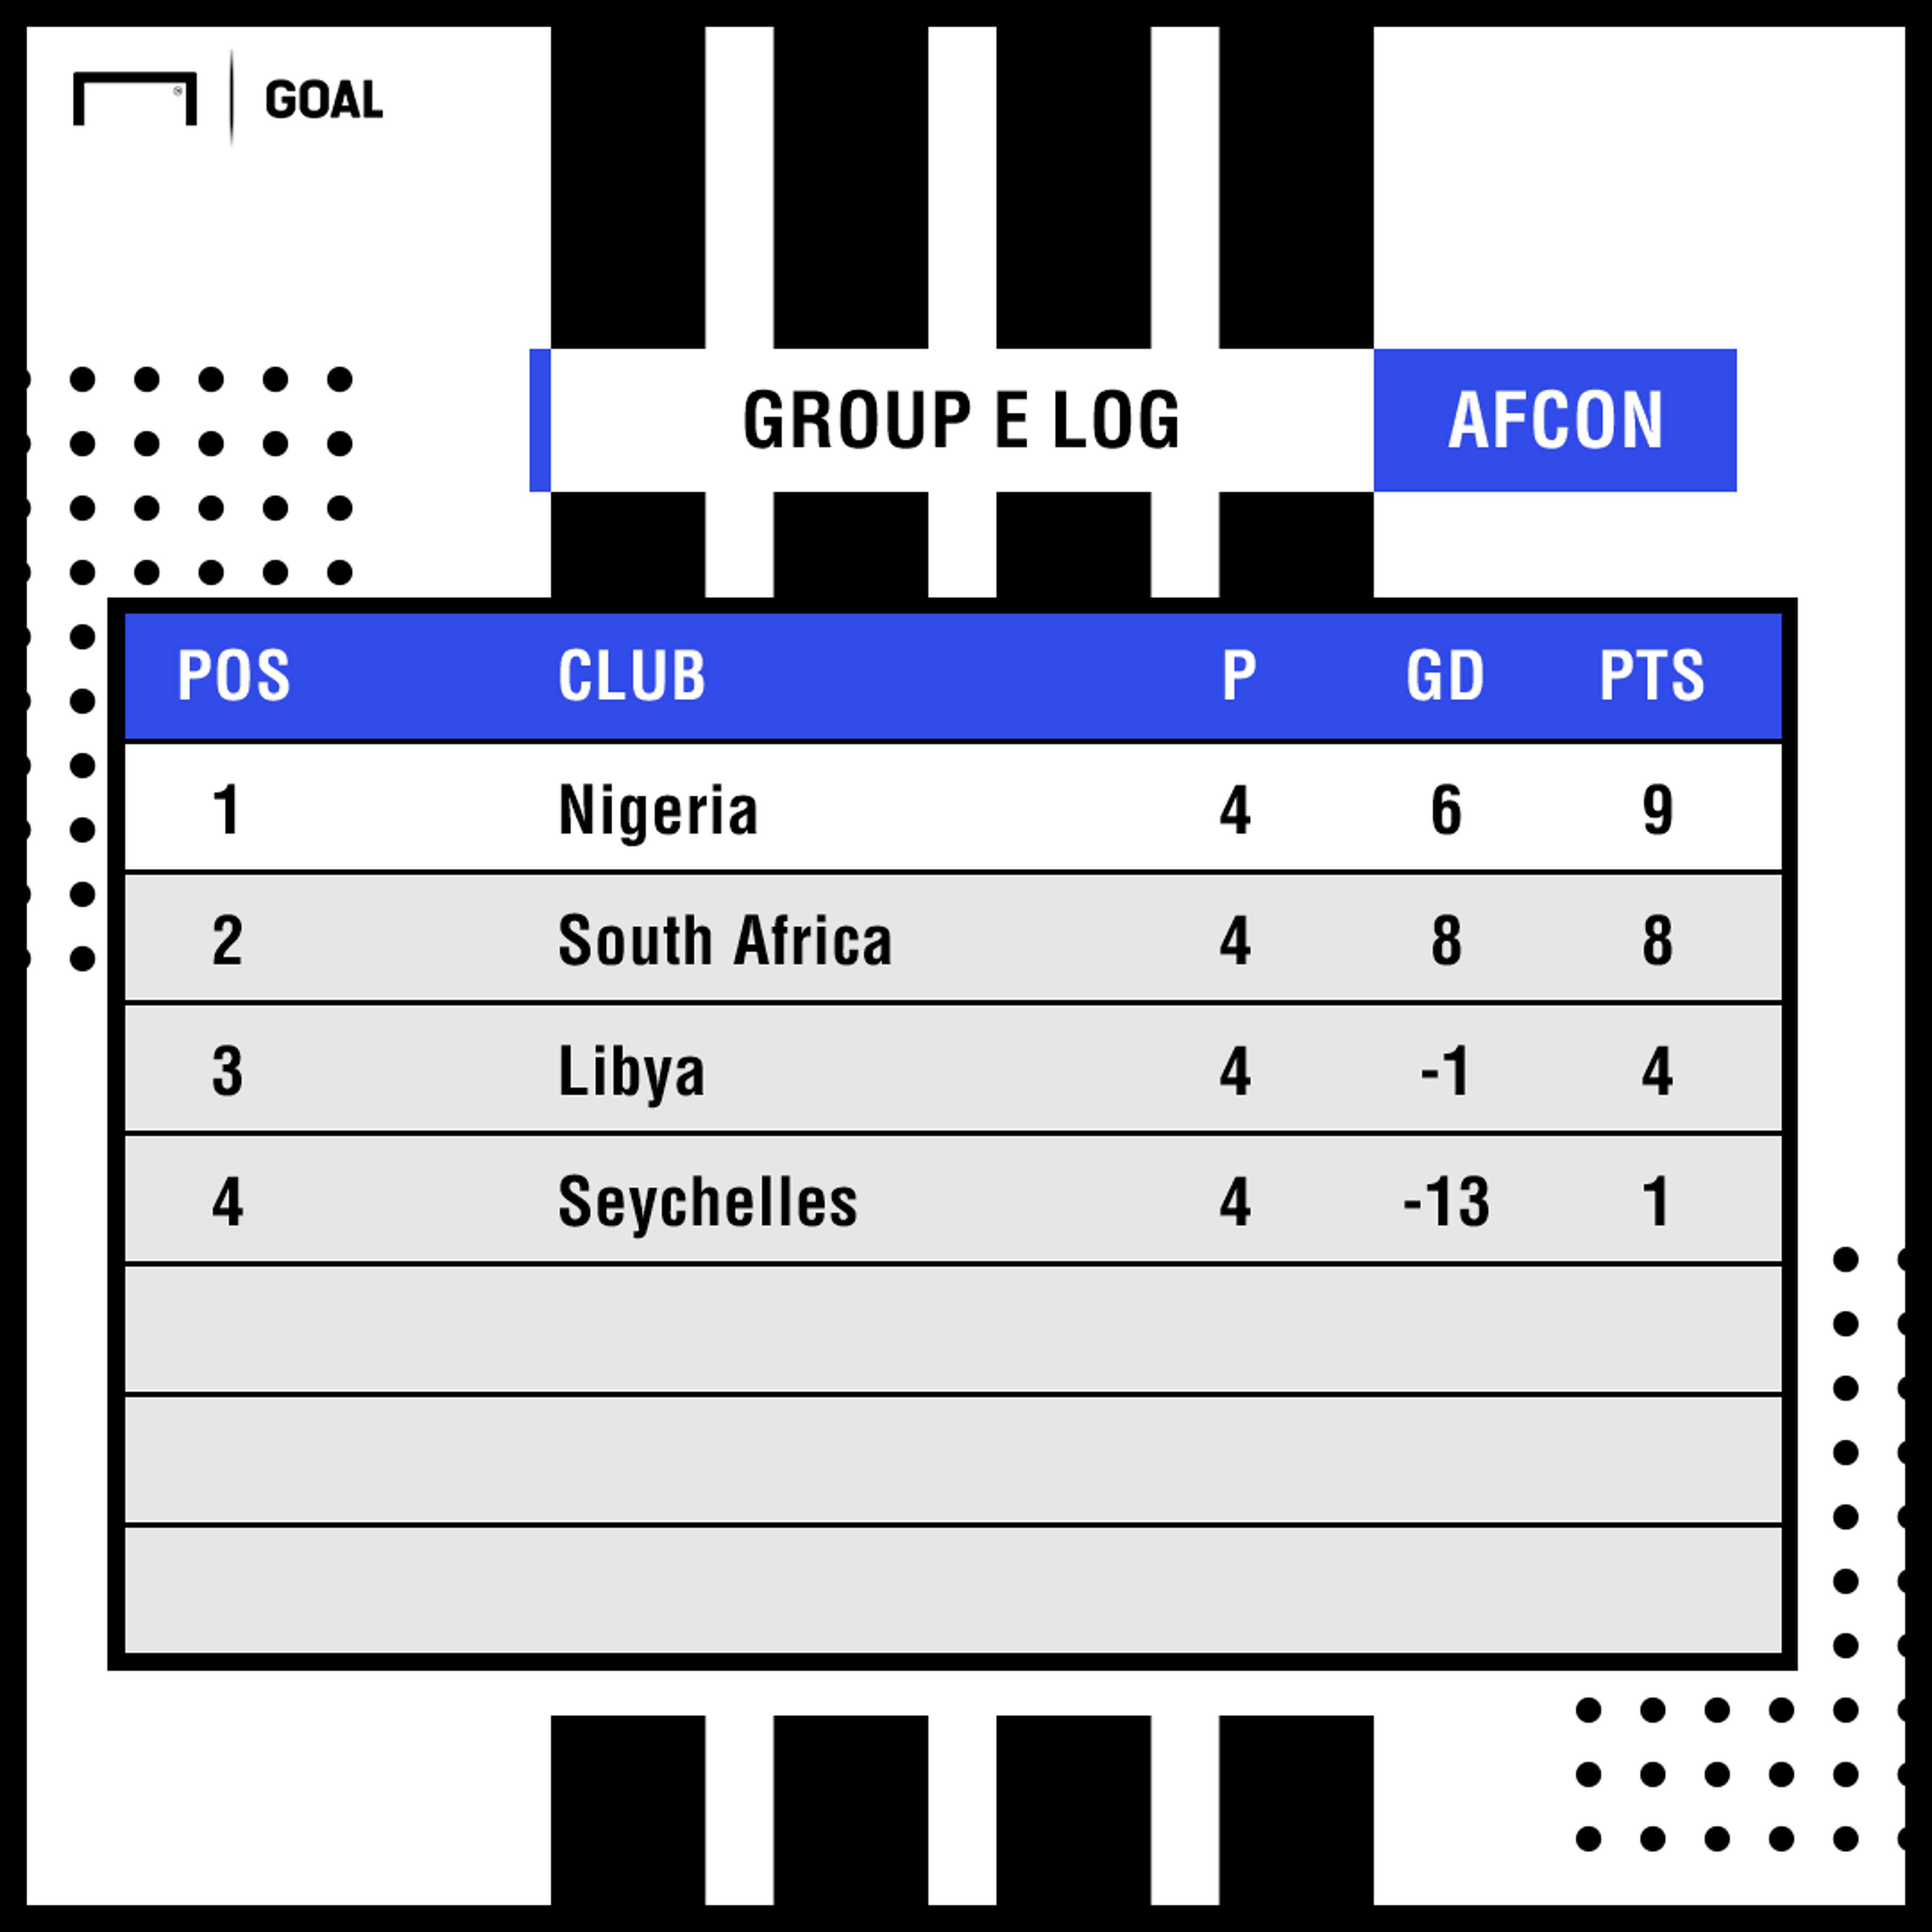 Afcon Group E log